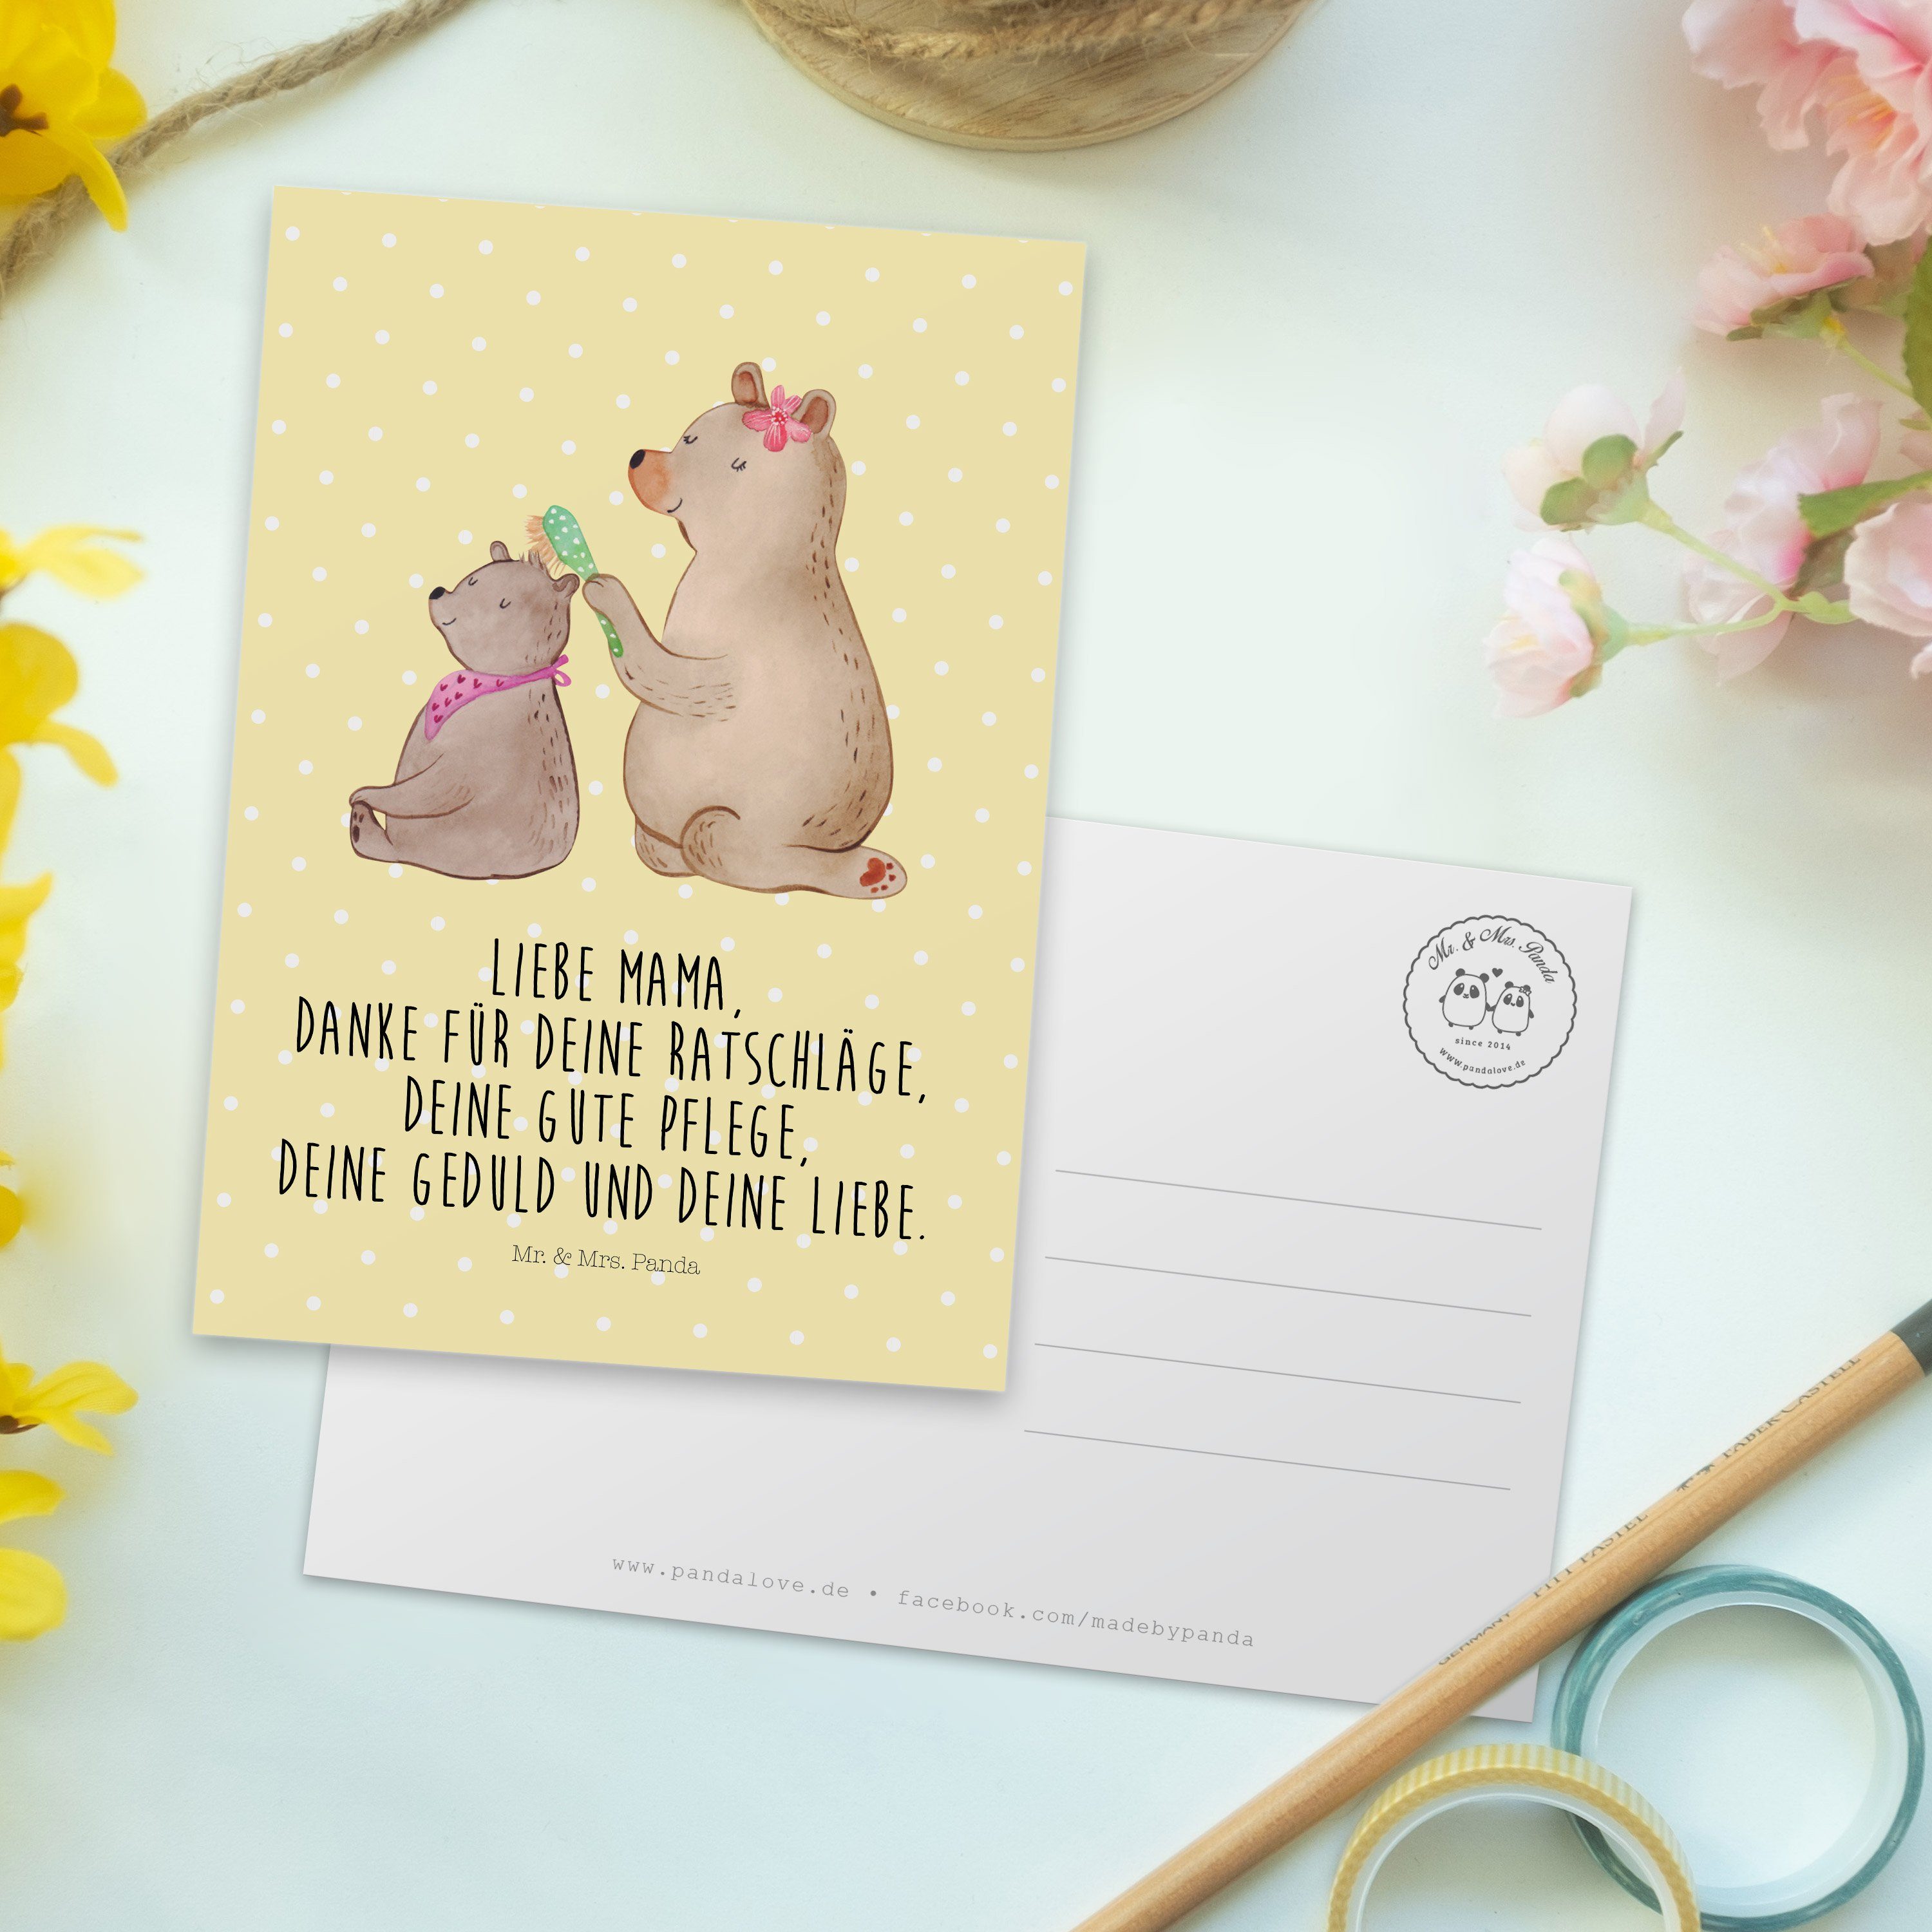 Mr. & Mrs. mit - Panda Gelb Kind Geschenk, Muttertag, Pastell Bär Einladun Postkarte Vatertag, 